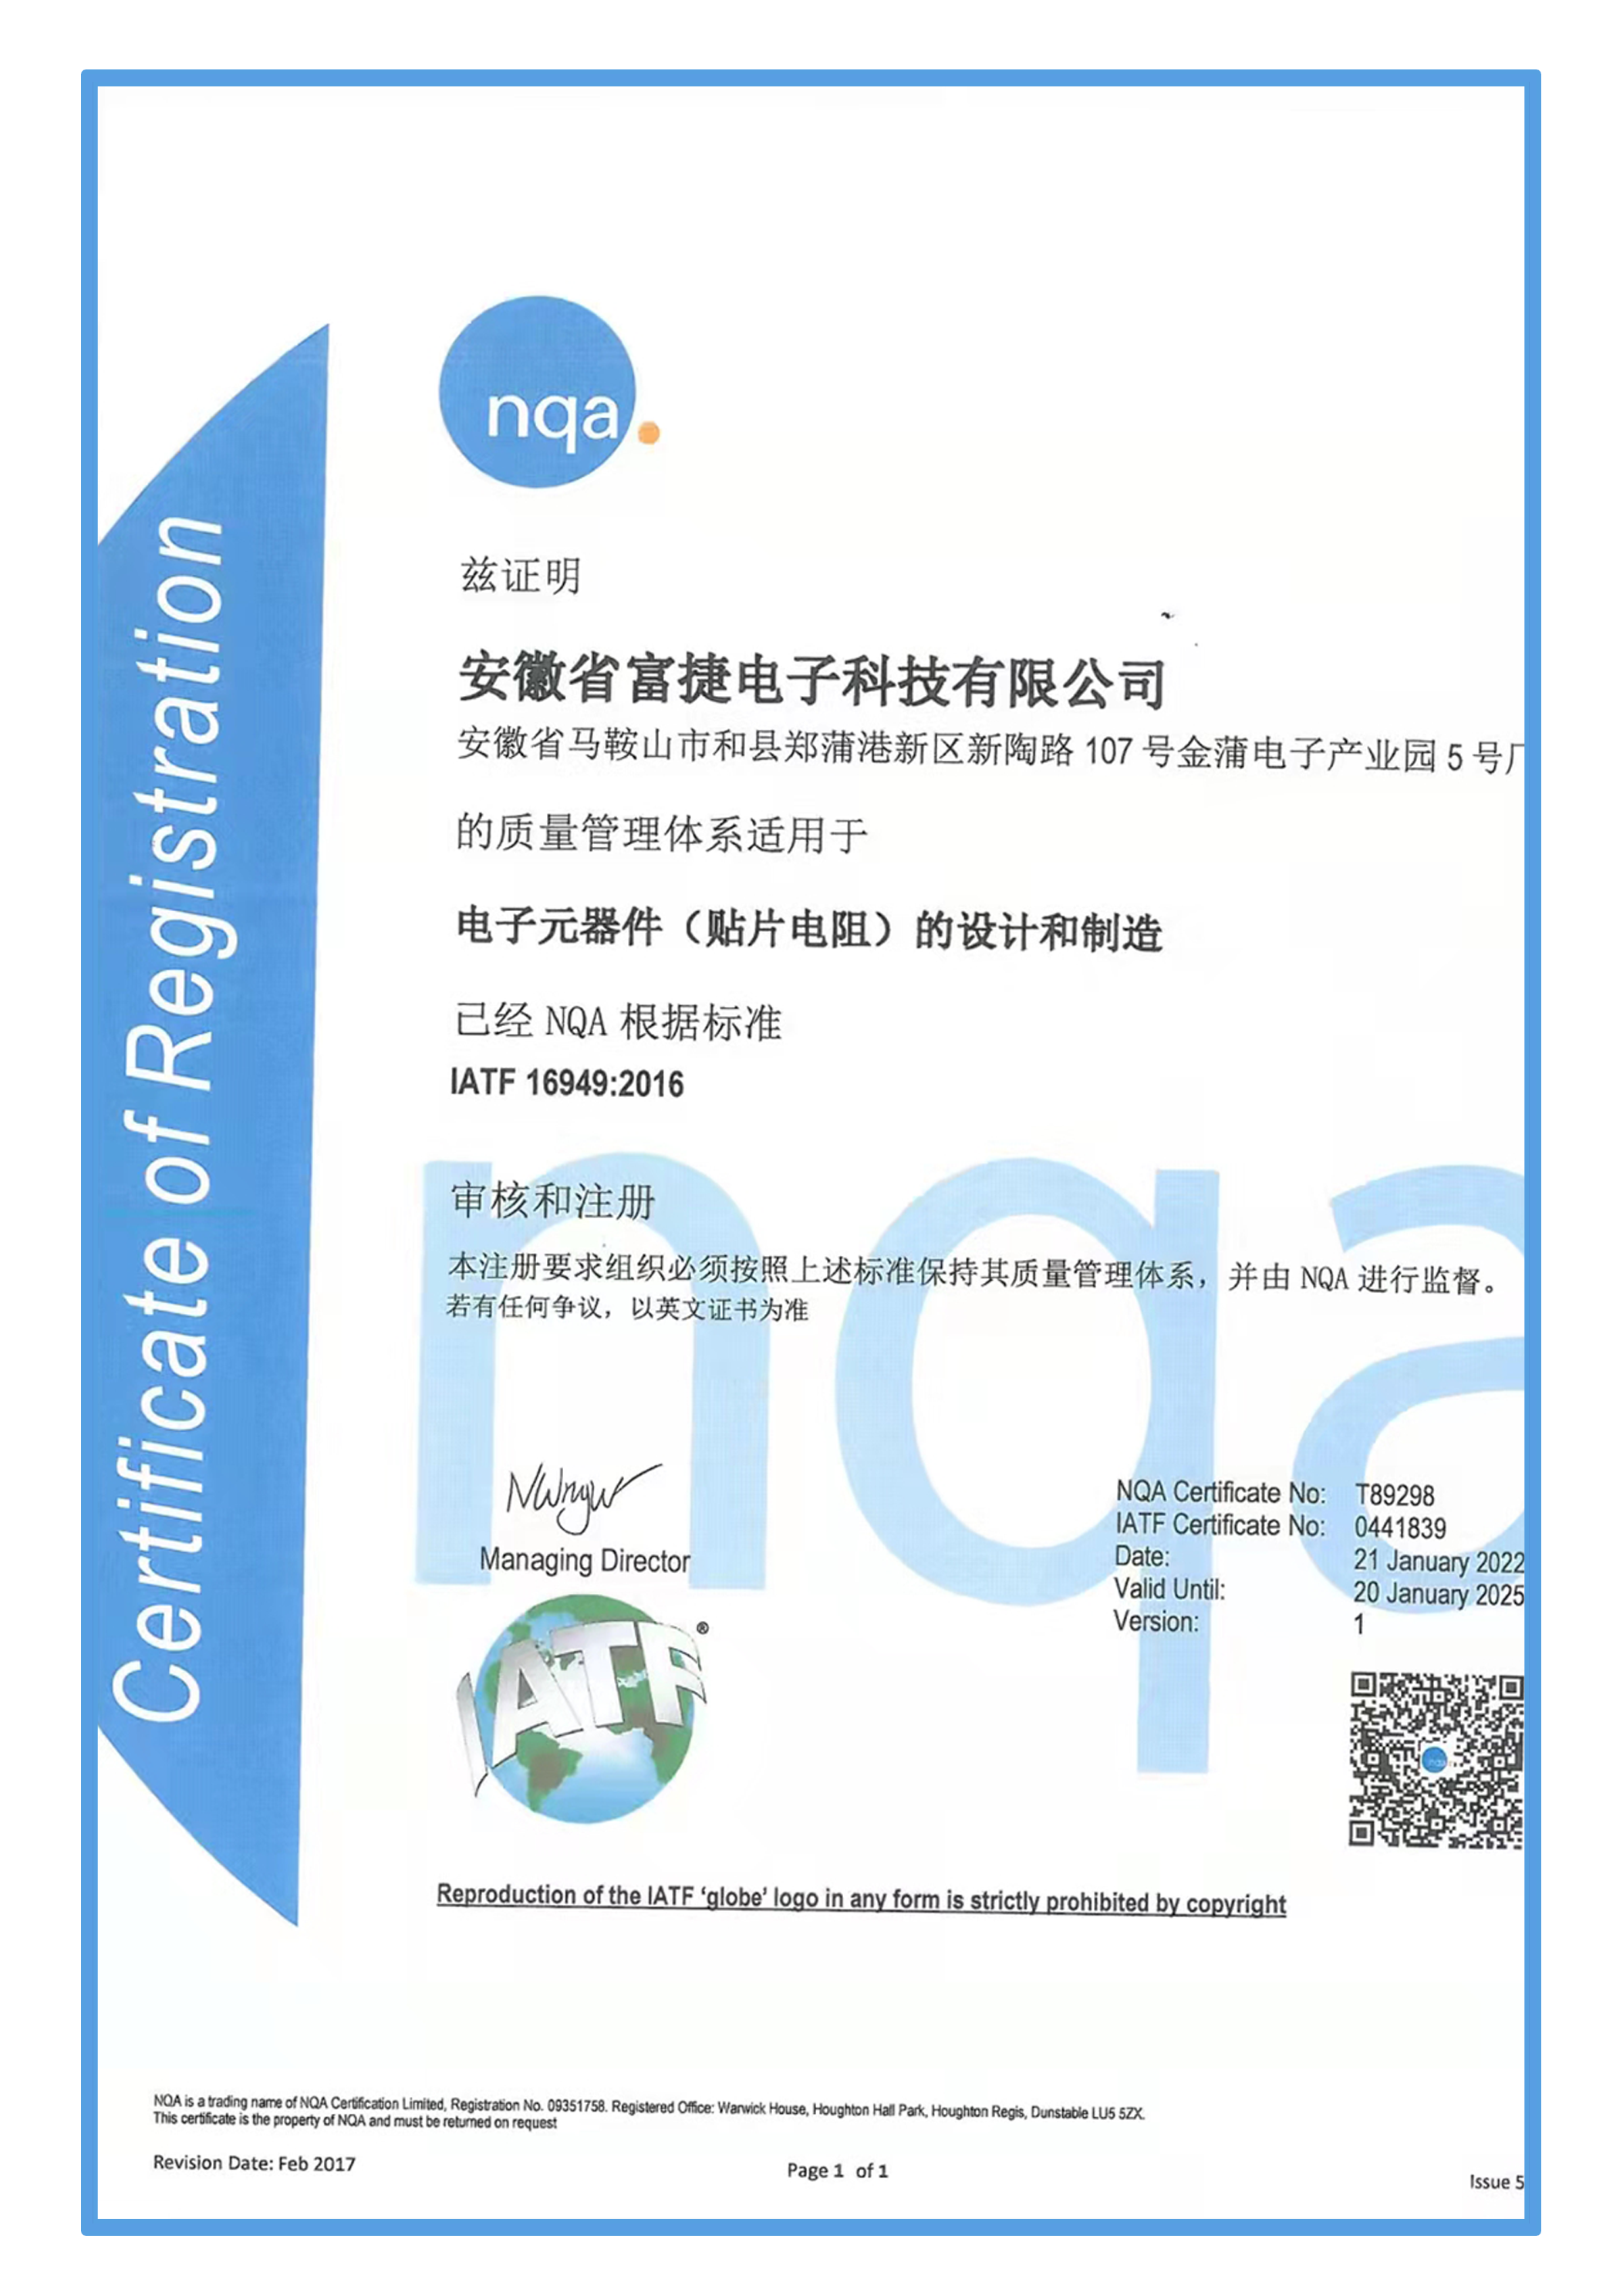 安徽富信旗下两大事业部顺利通过IATF 16949汽车质量管理体系认证